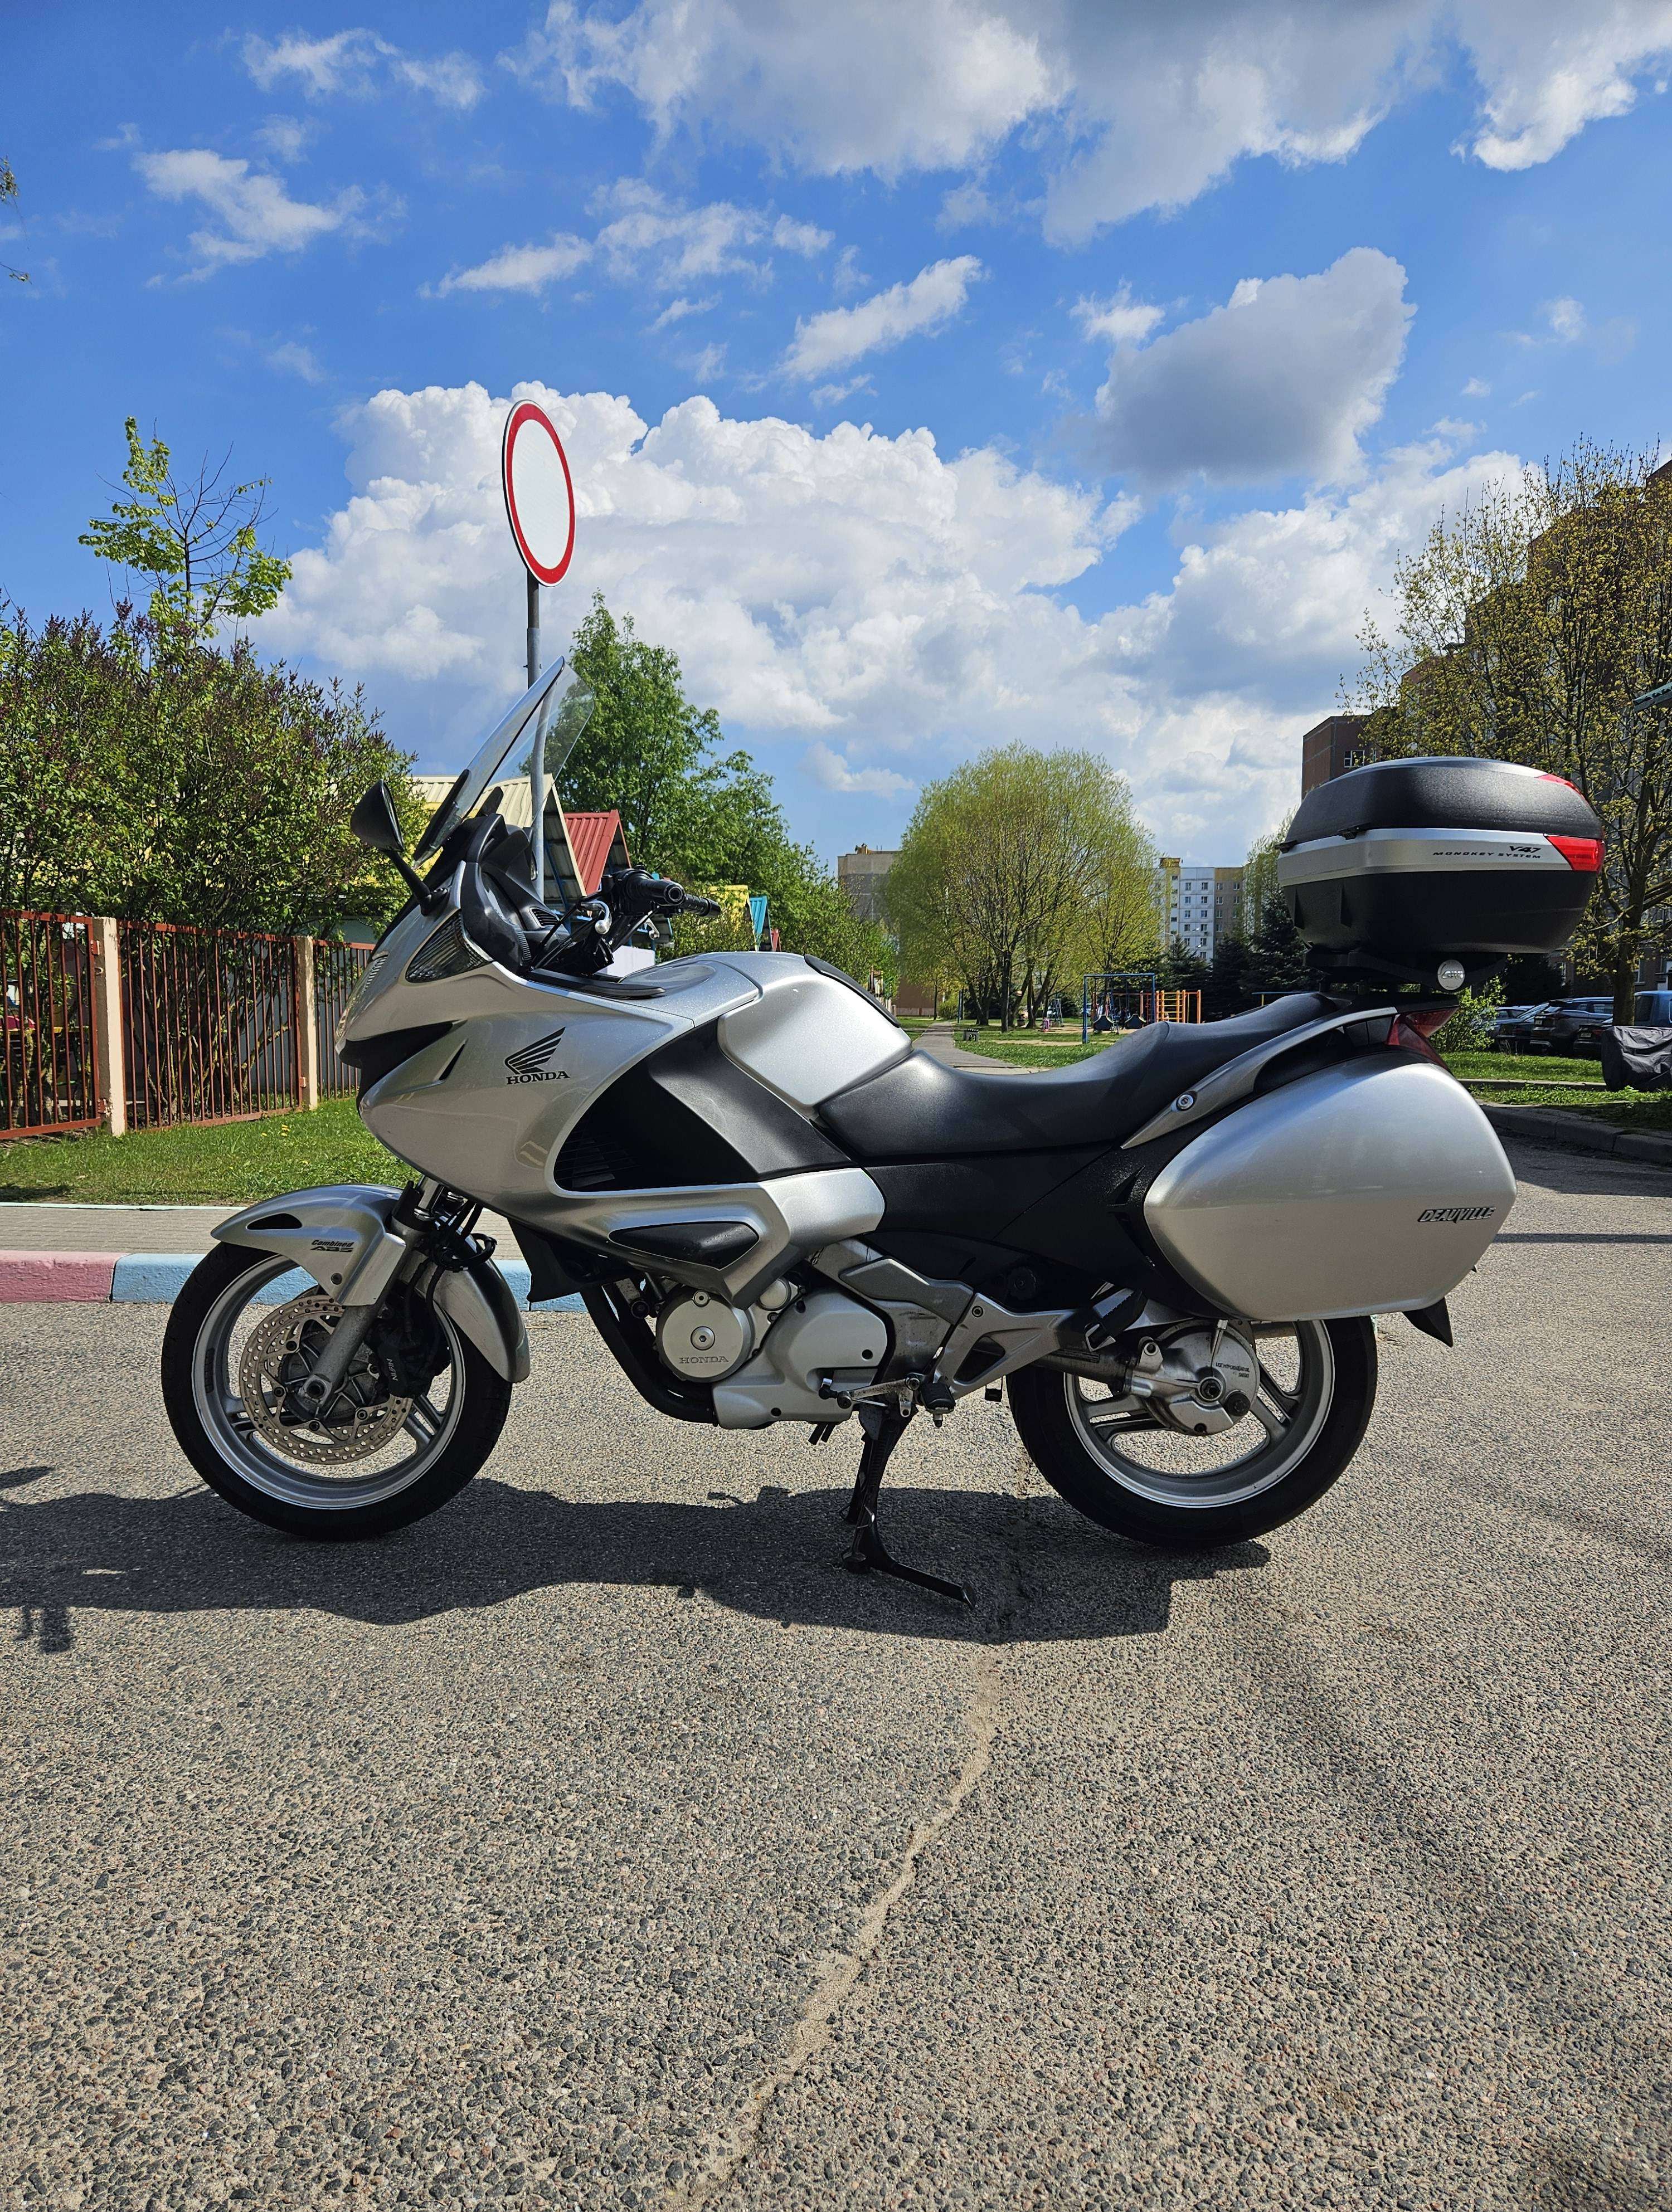 Купить мотоцикл Honda NT в Беларуси в кредит - цены, характеристики, фото. в Беларуси в кредит